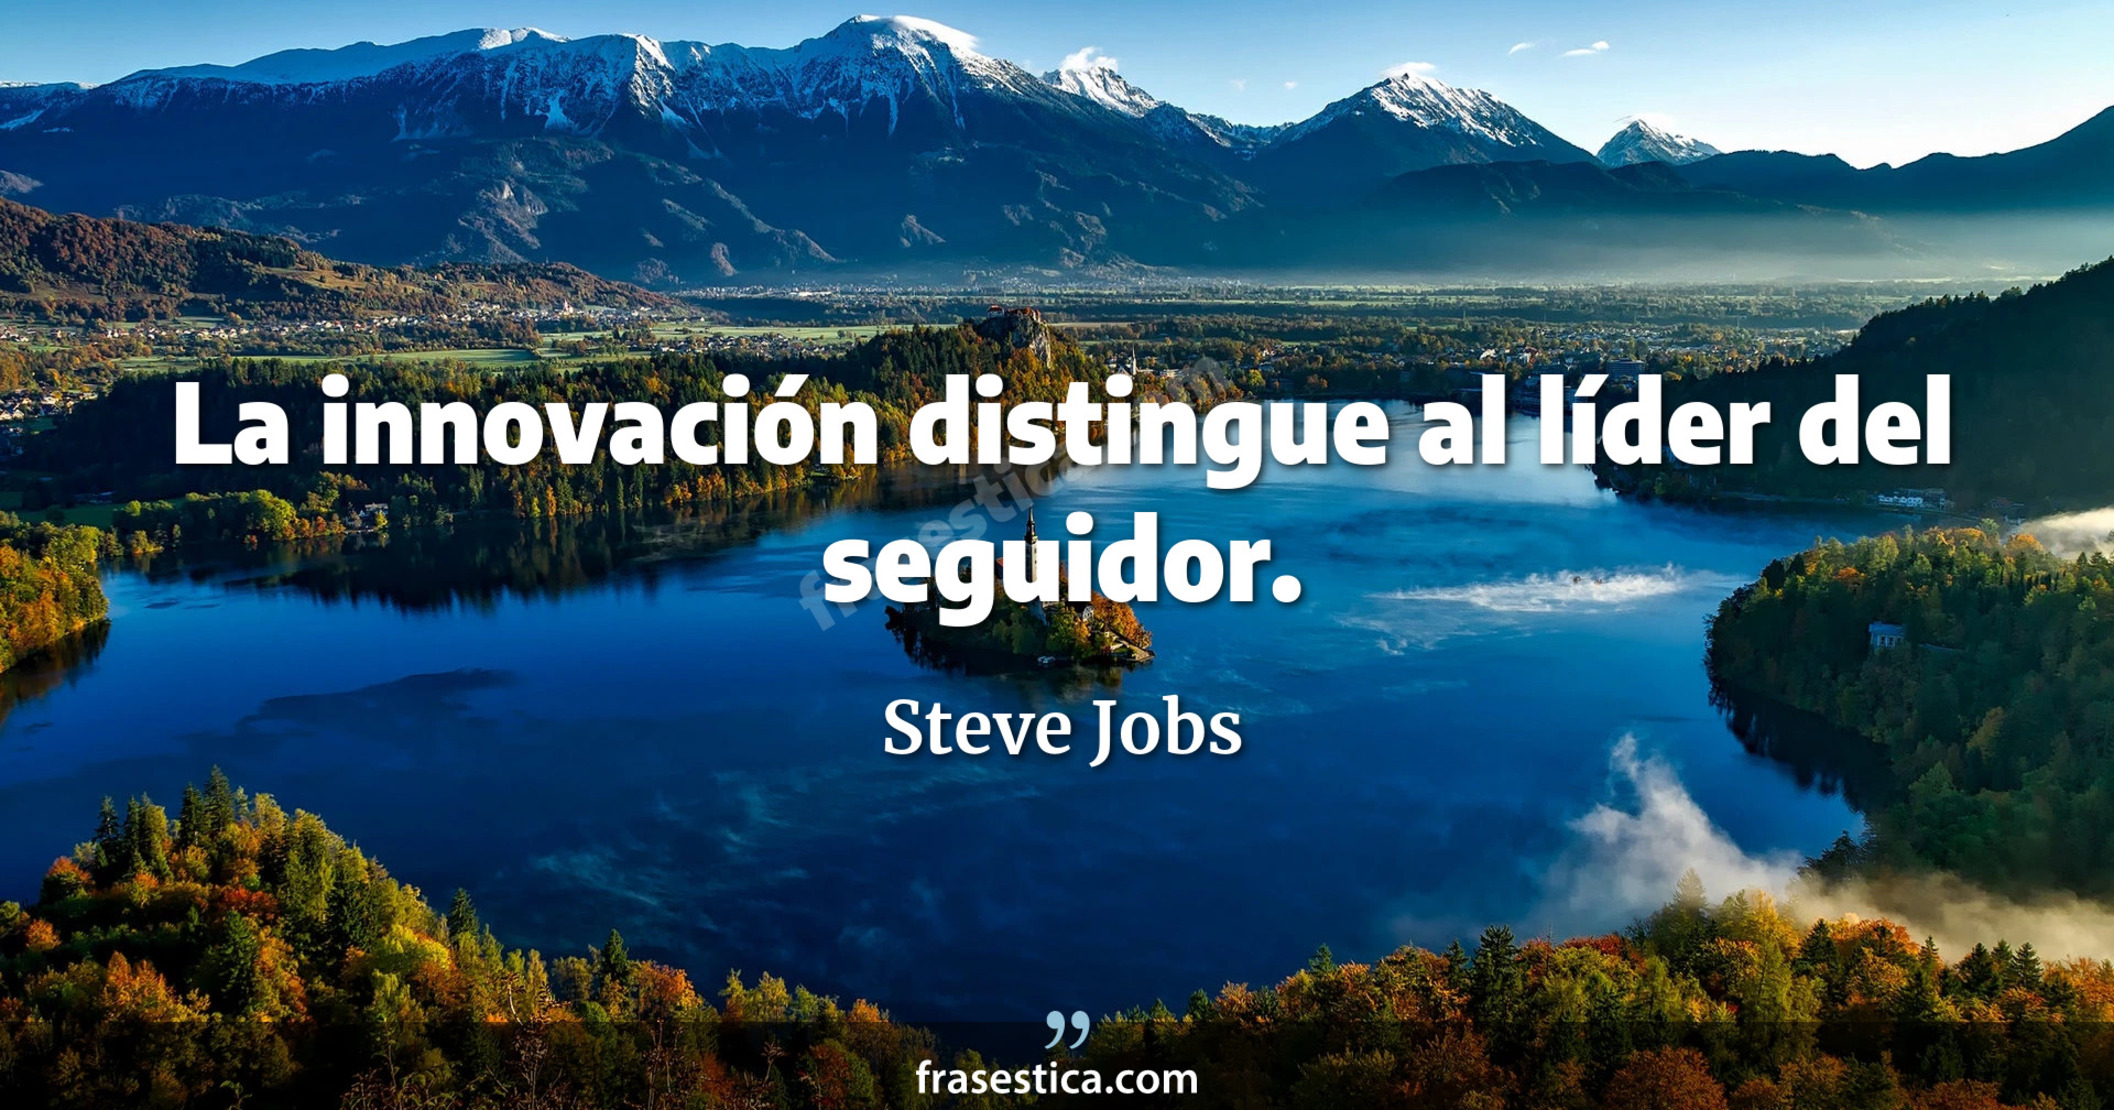 La innovación distingue al líder del seguidor. - Steve Jobs